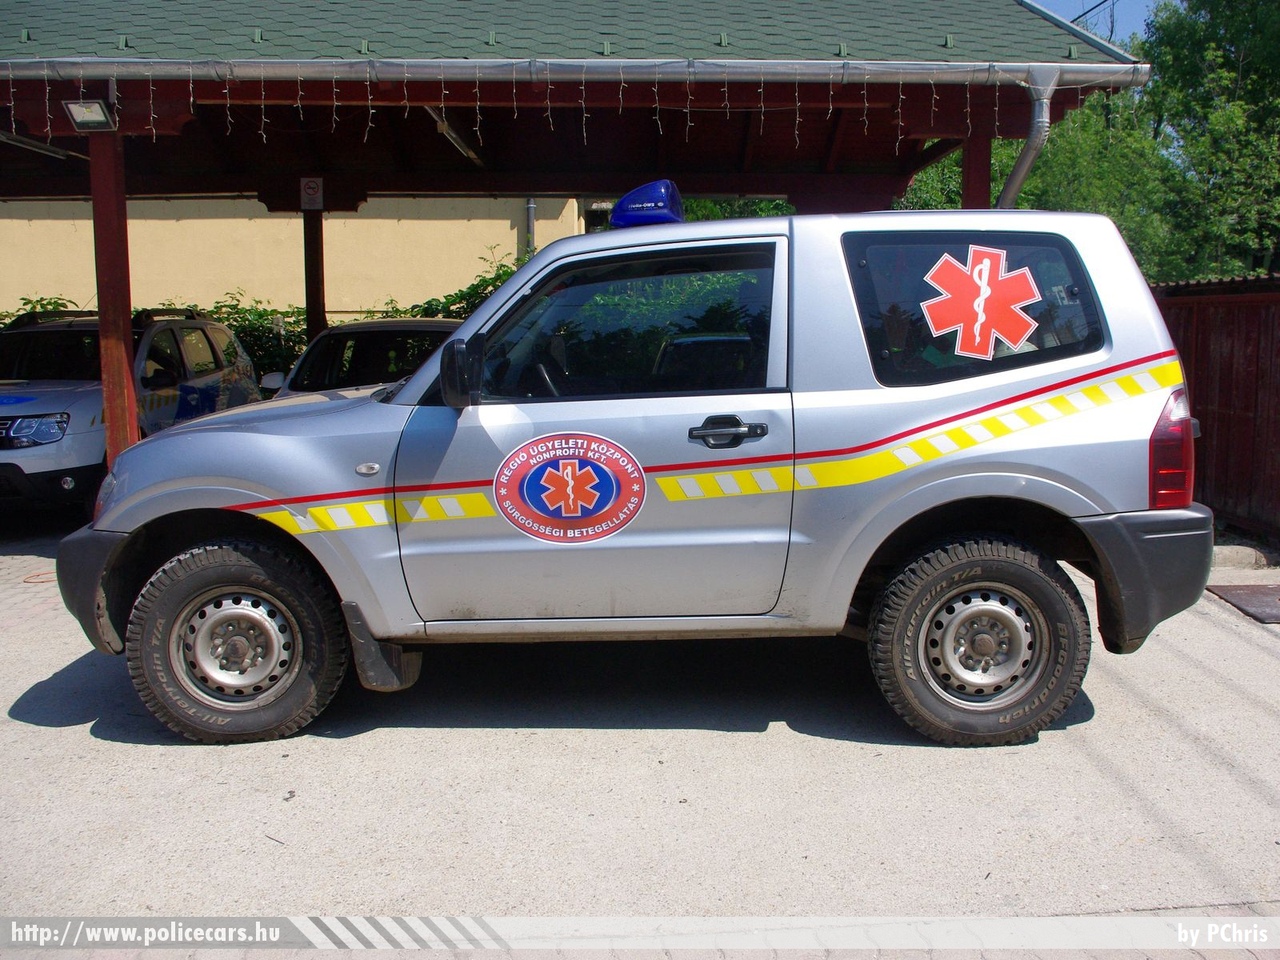 Mitsubishi Pajero, Régió Ügyeleti Központ Nonprofit KFT, orvosi ügyelet, fotó: PChris
Keywords: mentő mentőautó magyar Magyarország Hungary hungarian ambulance JUP-726